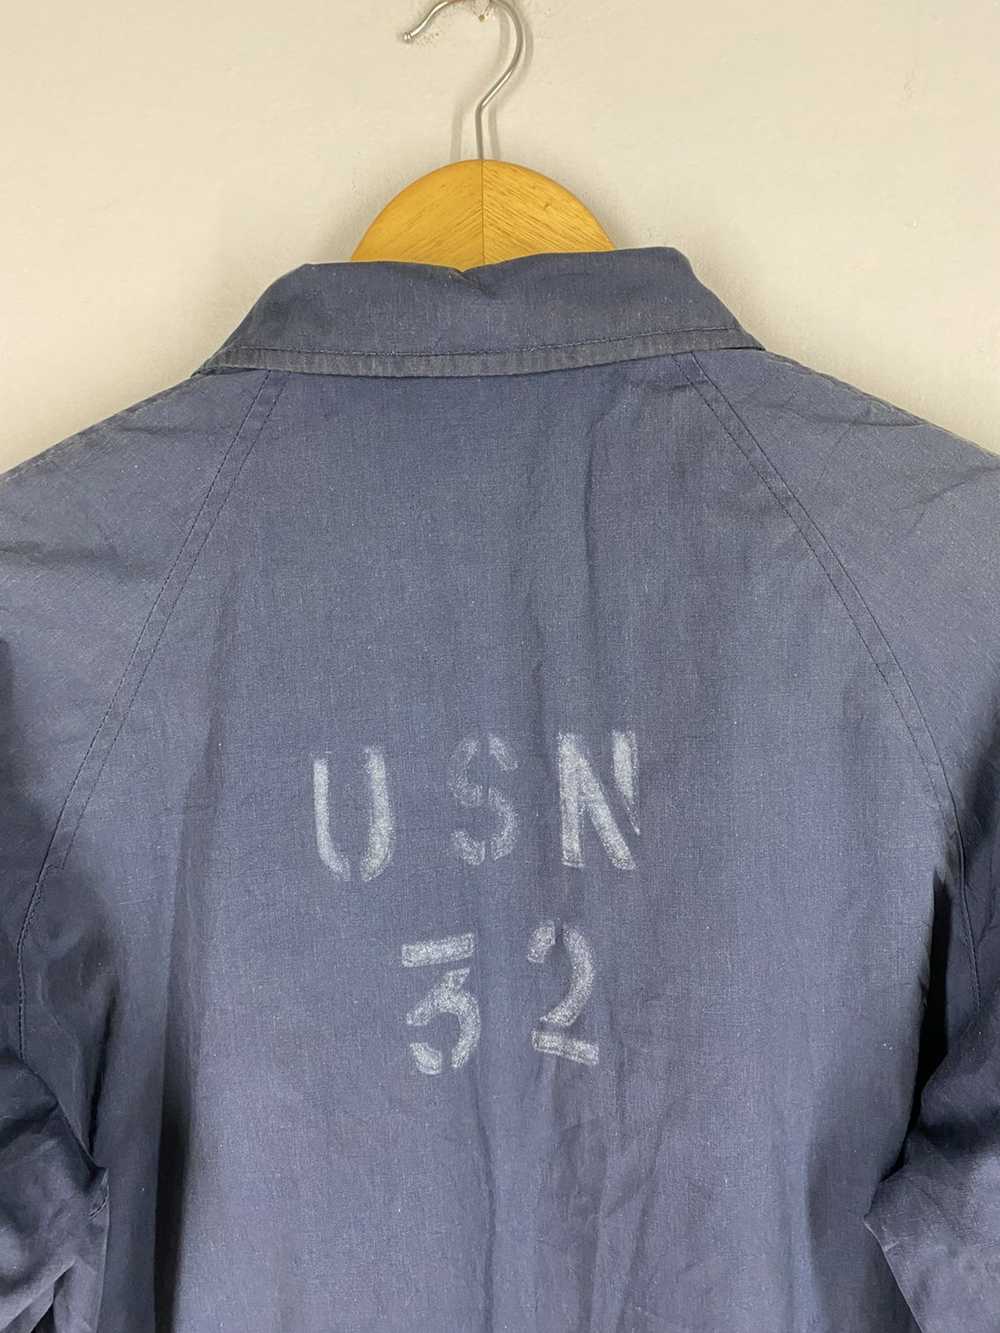 Usn Vintage 80s USN 32 Top Zipper Jacket - image 9